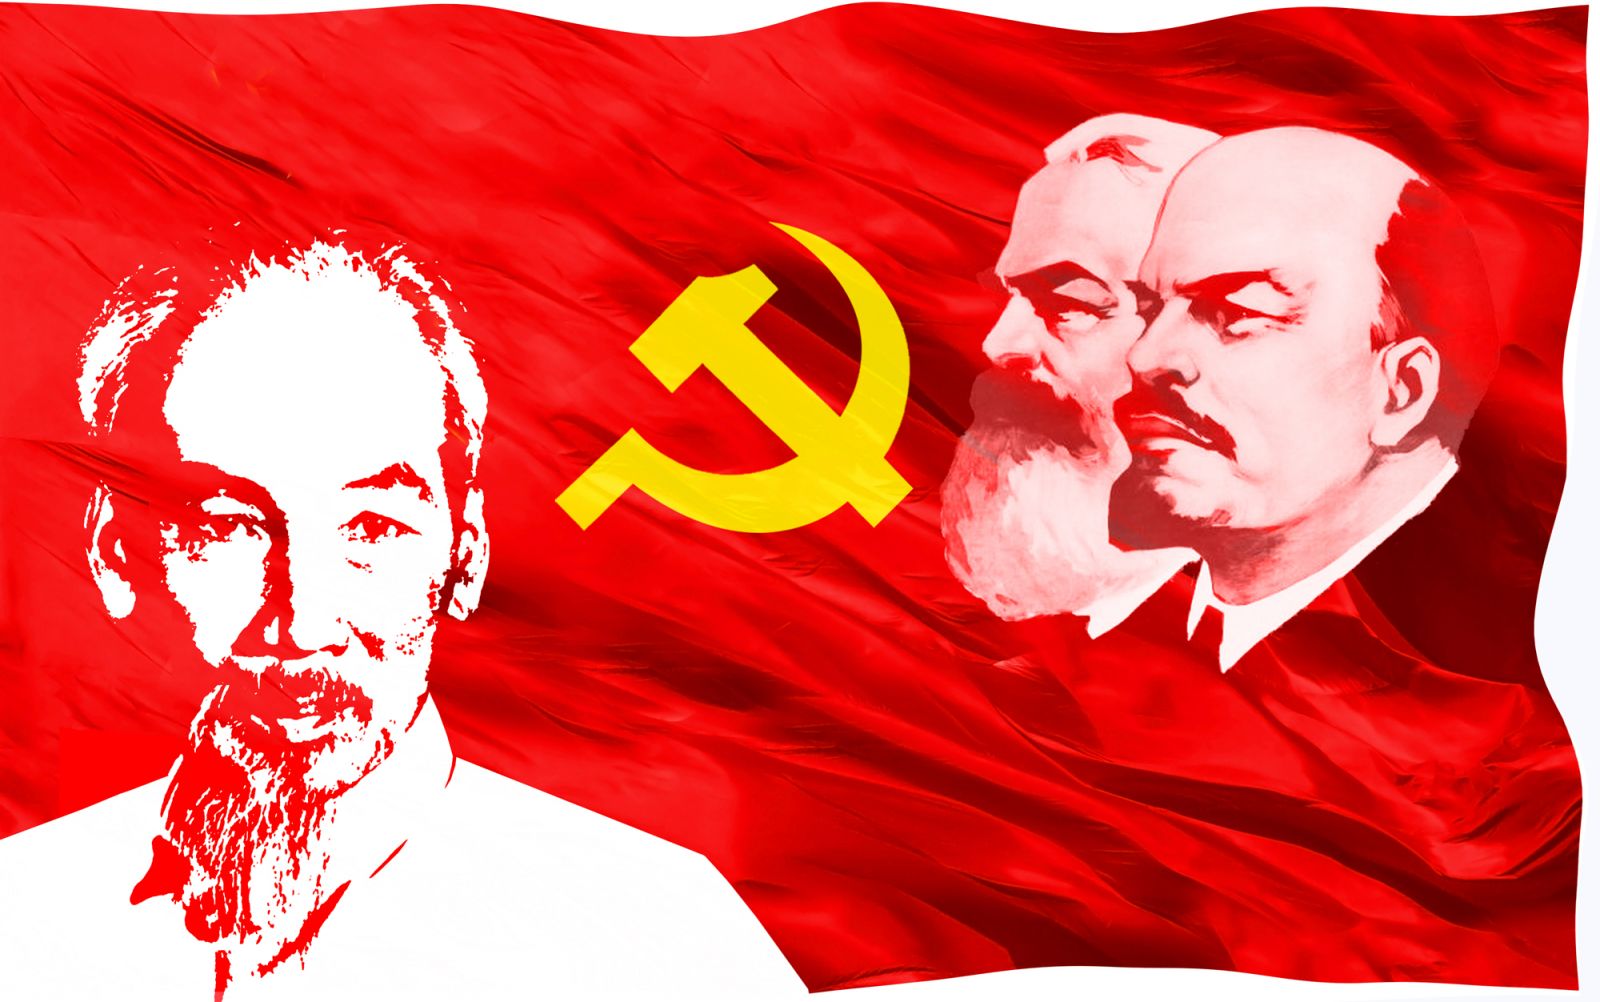 Chủ nghĩa Mác-Lênin, tư tưởng Hồ Chí Minh - nền tảng tư tưởng, kim chỉ nam cho hành động của Đảng Cộng sản Việt Nam